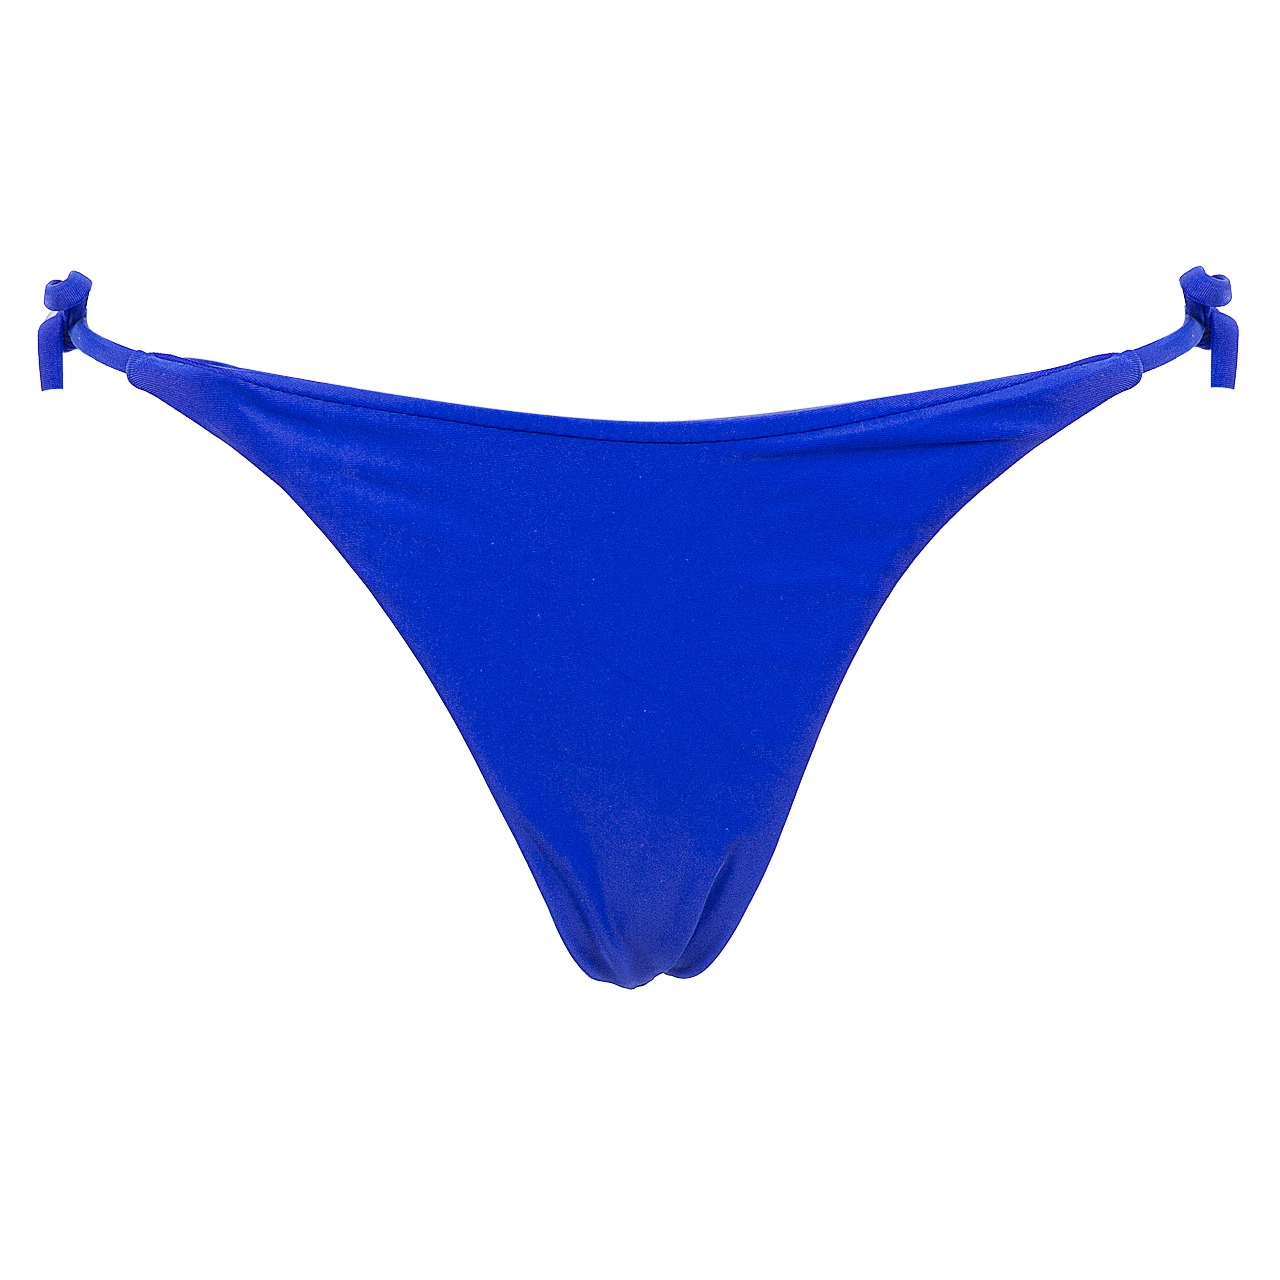 Сексуальные купальники для женщин бразильское пикантное бикини с боковой завязкой стринги купальник Fshion летний горячий сдельный Купальник трусы - Цвет: Синий